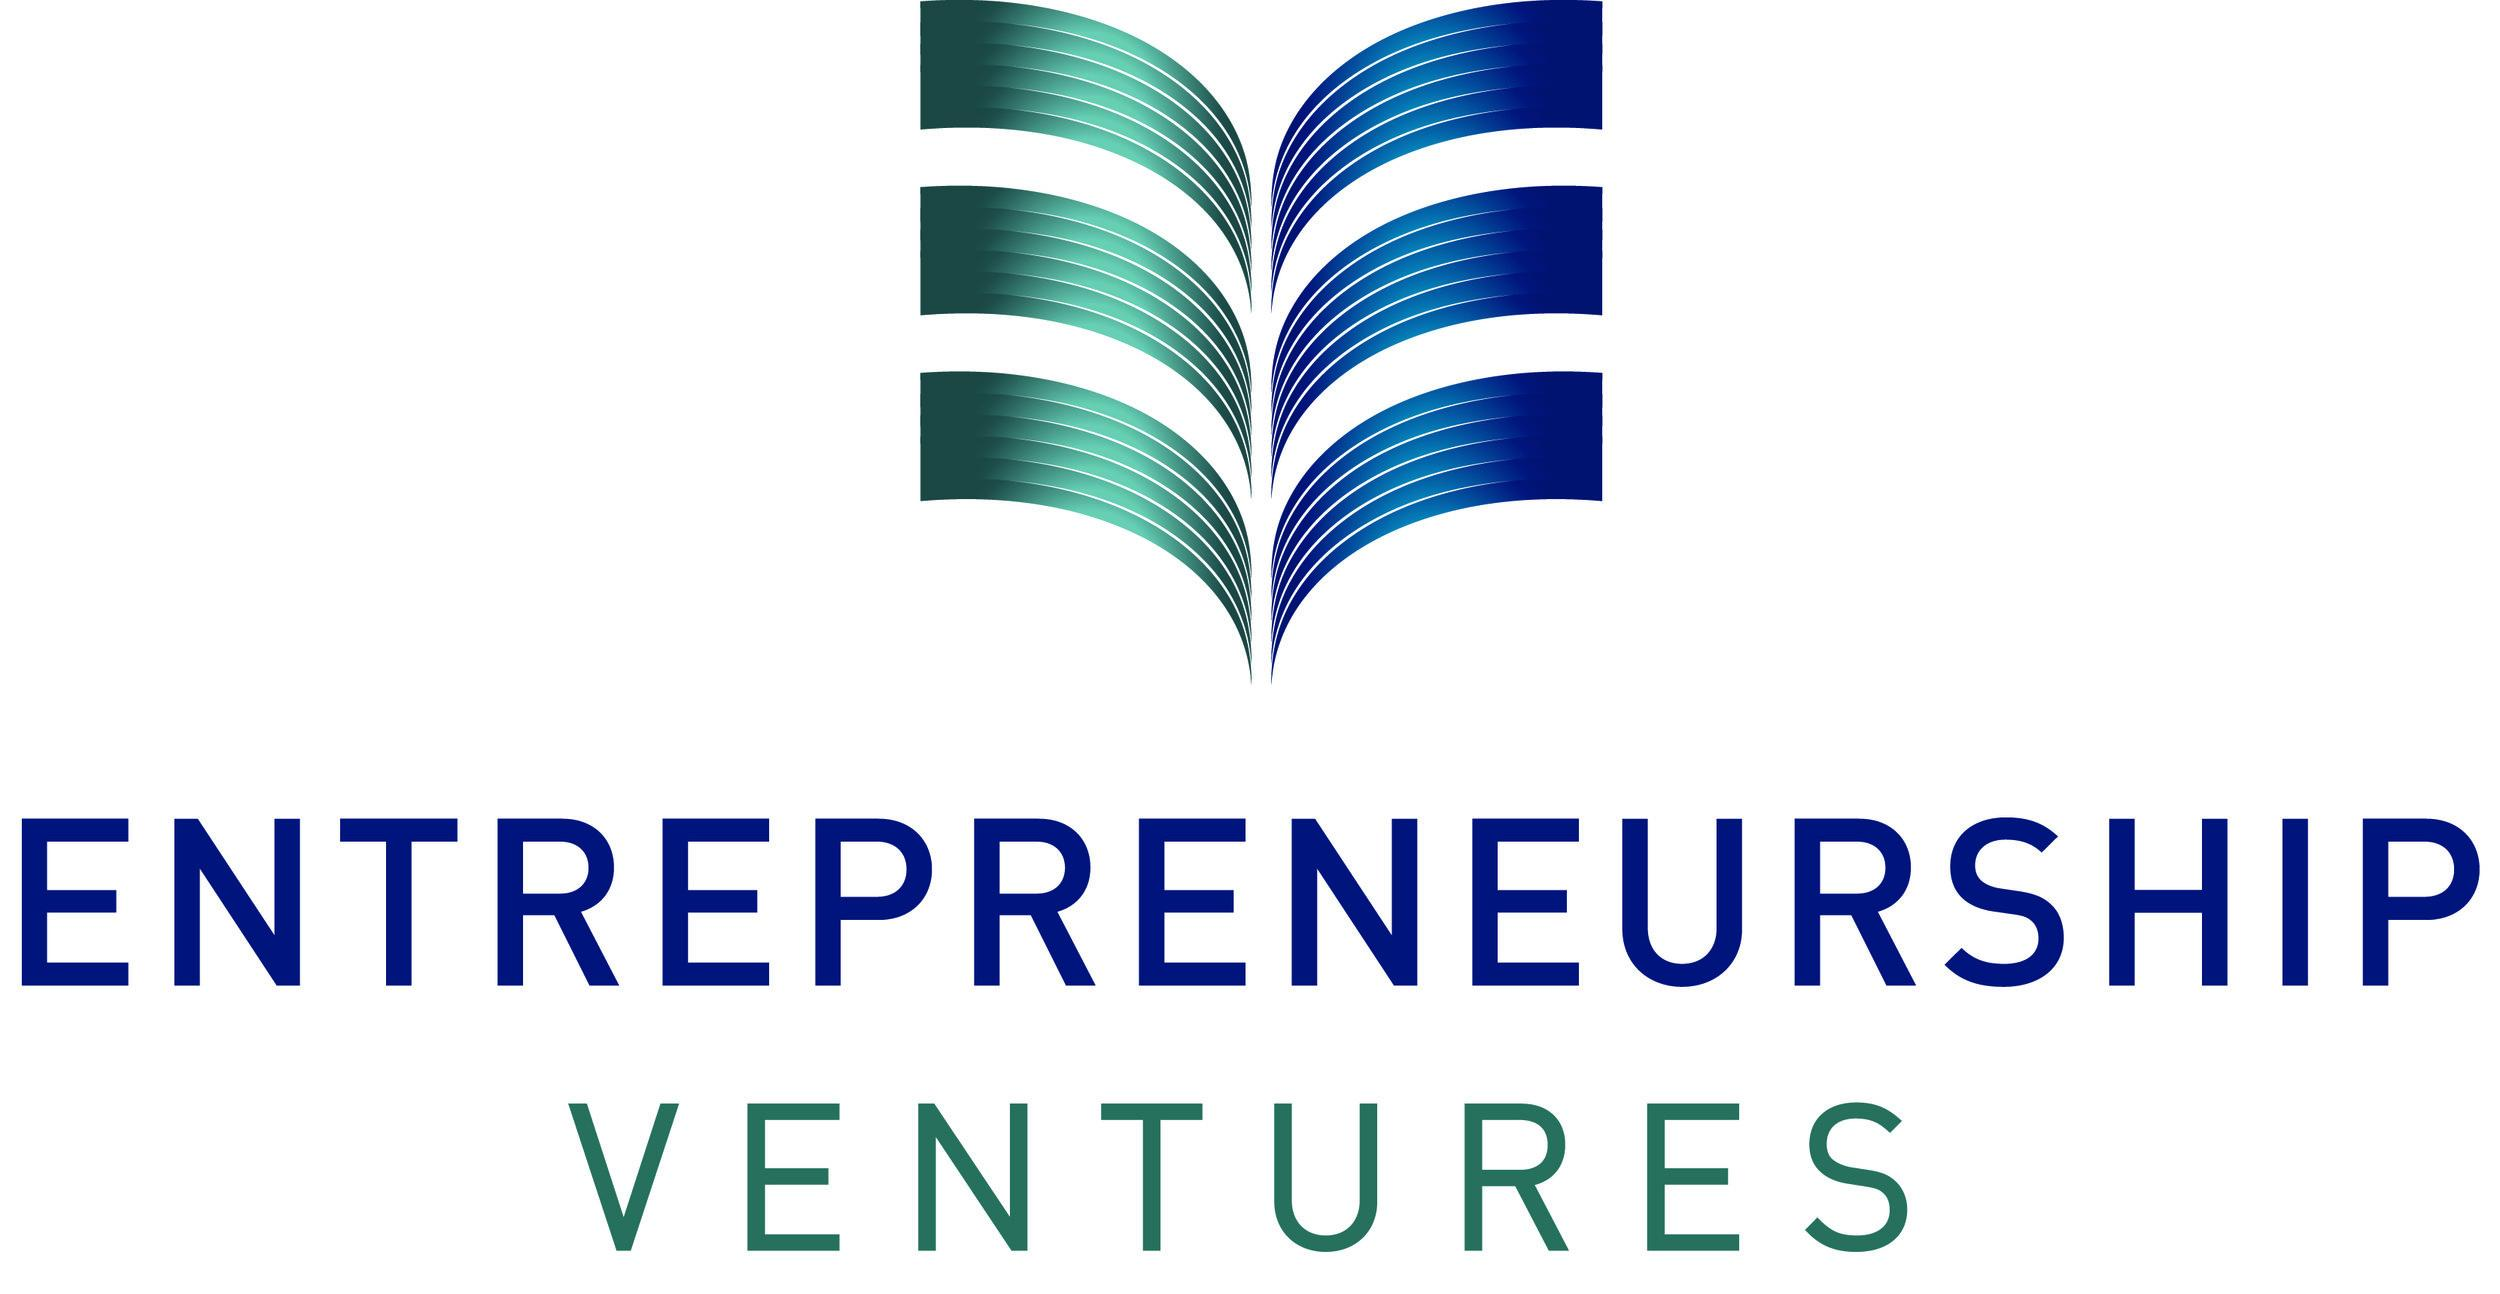 Entrepreneurship Ventures logo (4).jpg